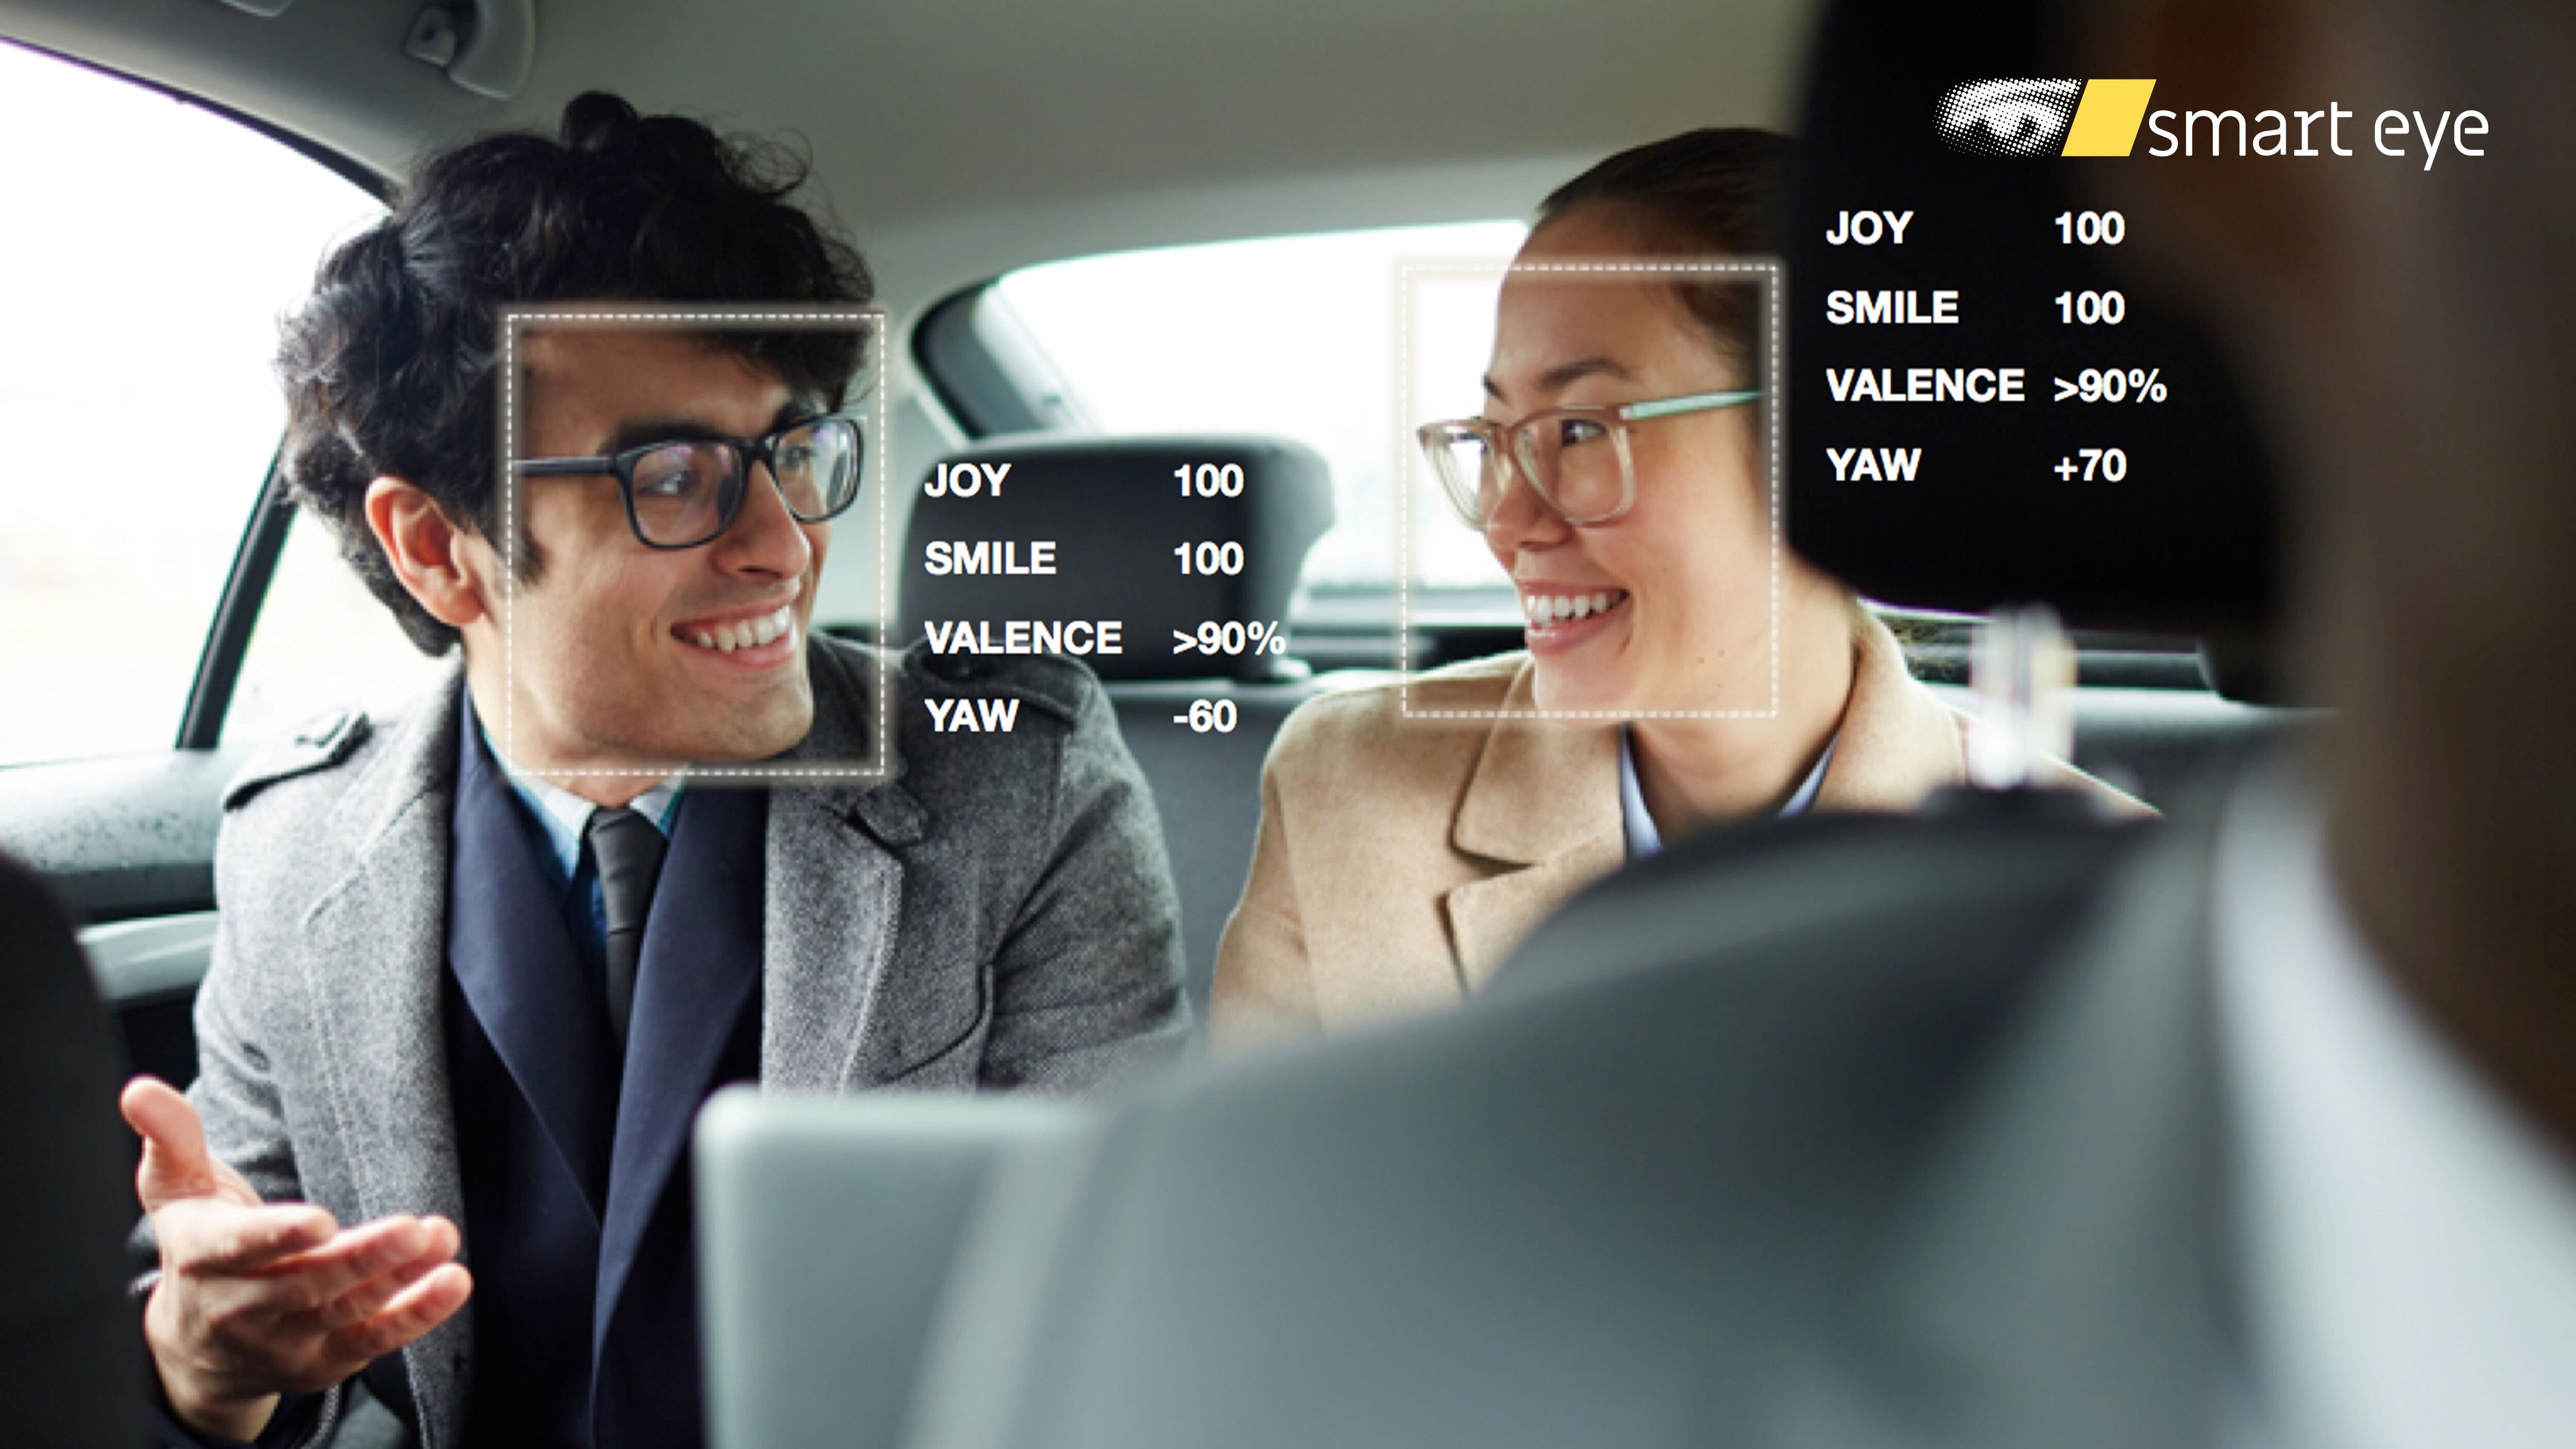 Imagen promocional del sistema de identificación de emociones a bordo que comercializa la empresa SmartEye.